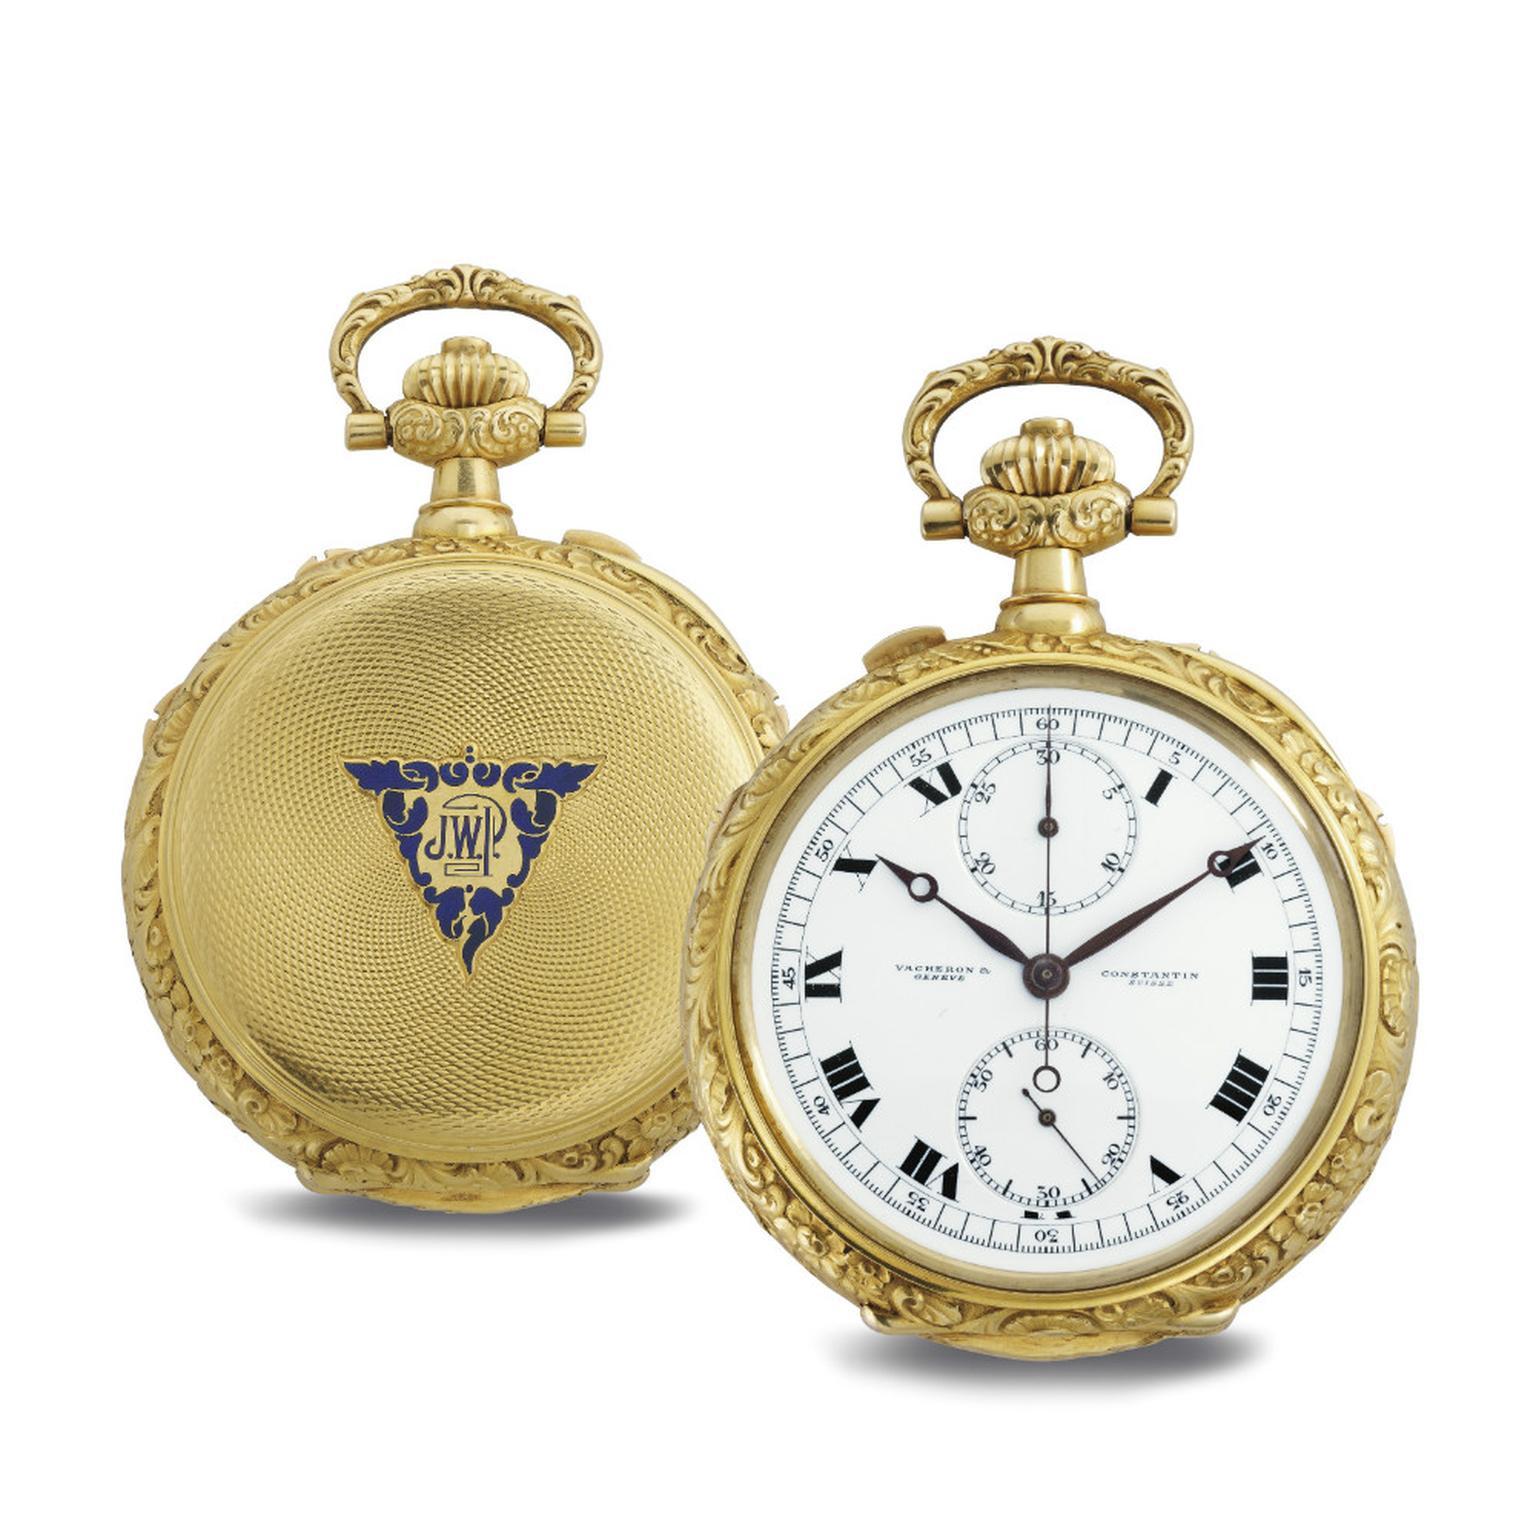 James Ward Packard astronomical pocket watch